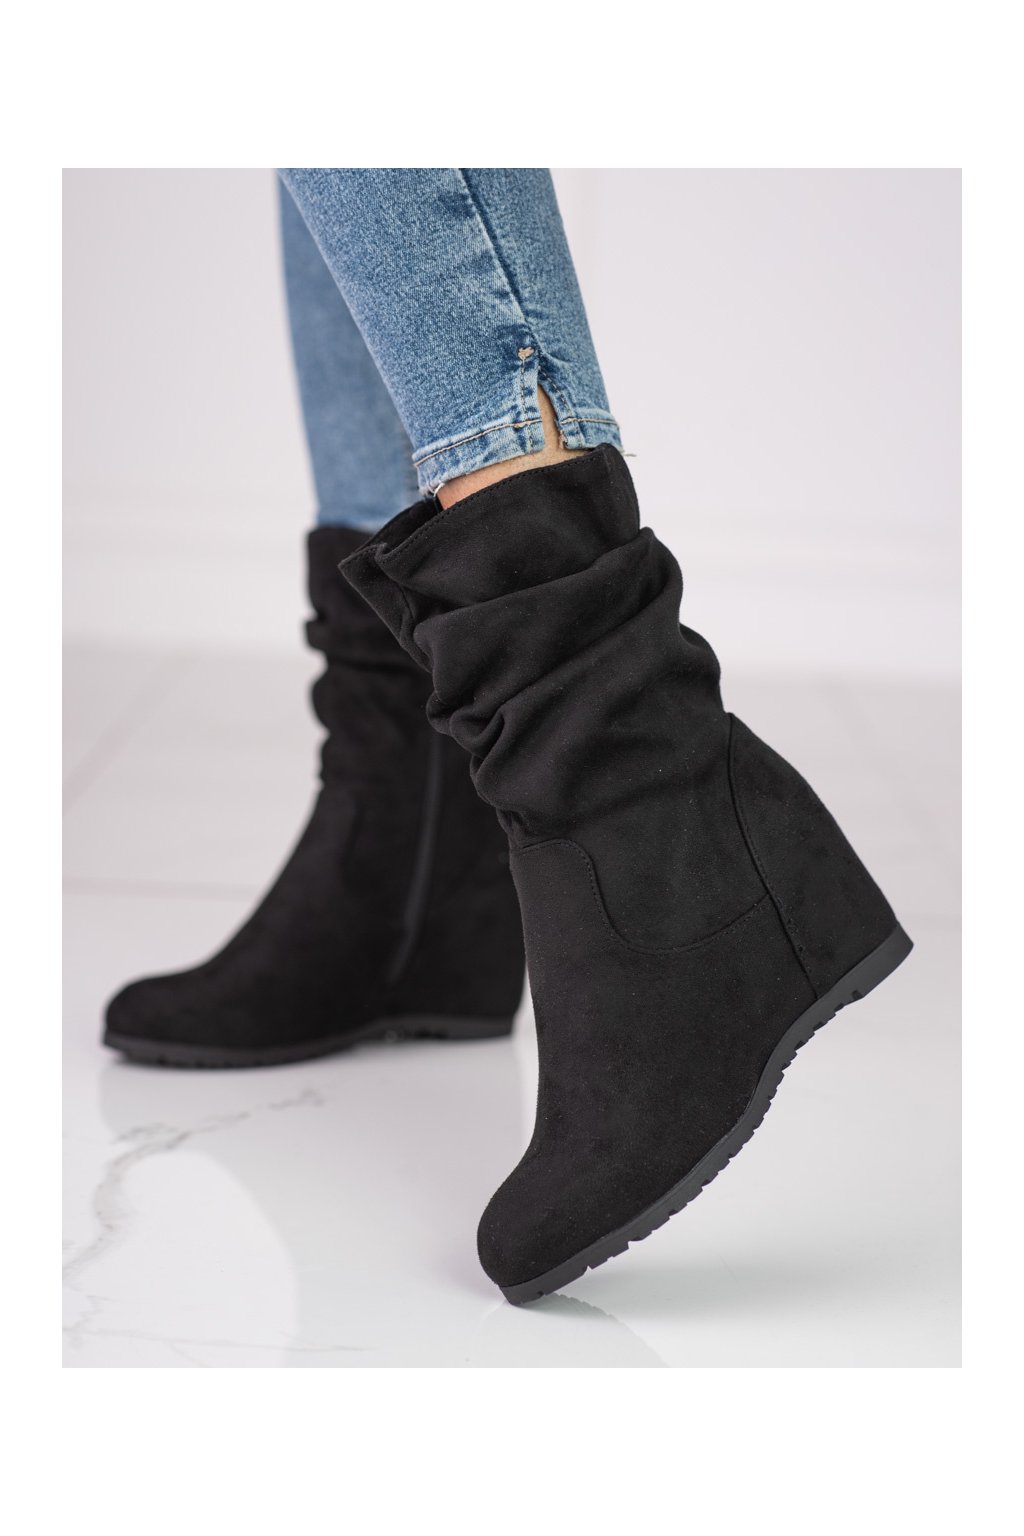 Čierne dámske topánky Shelovet kod H1119NE